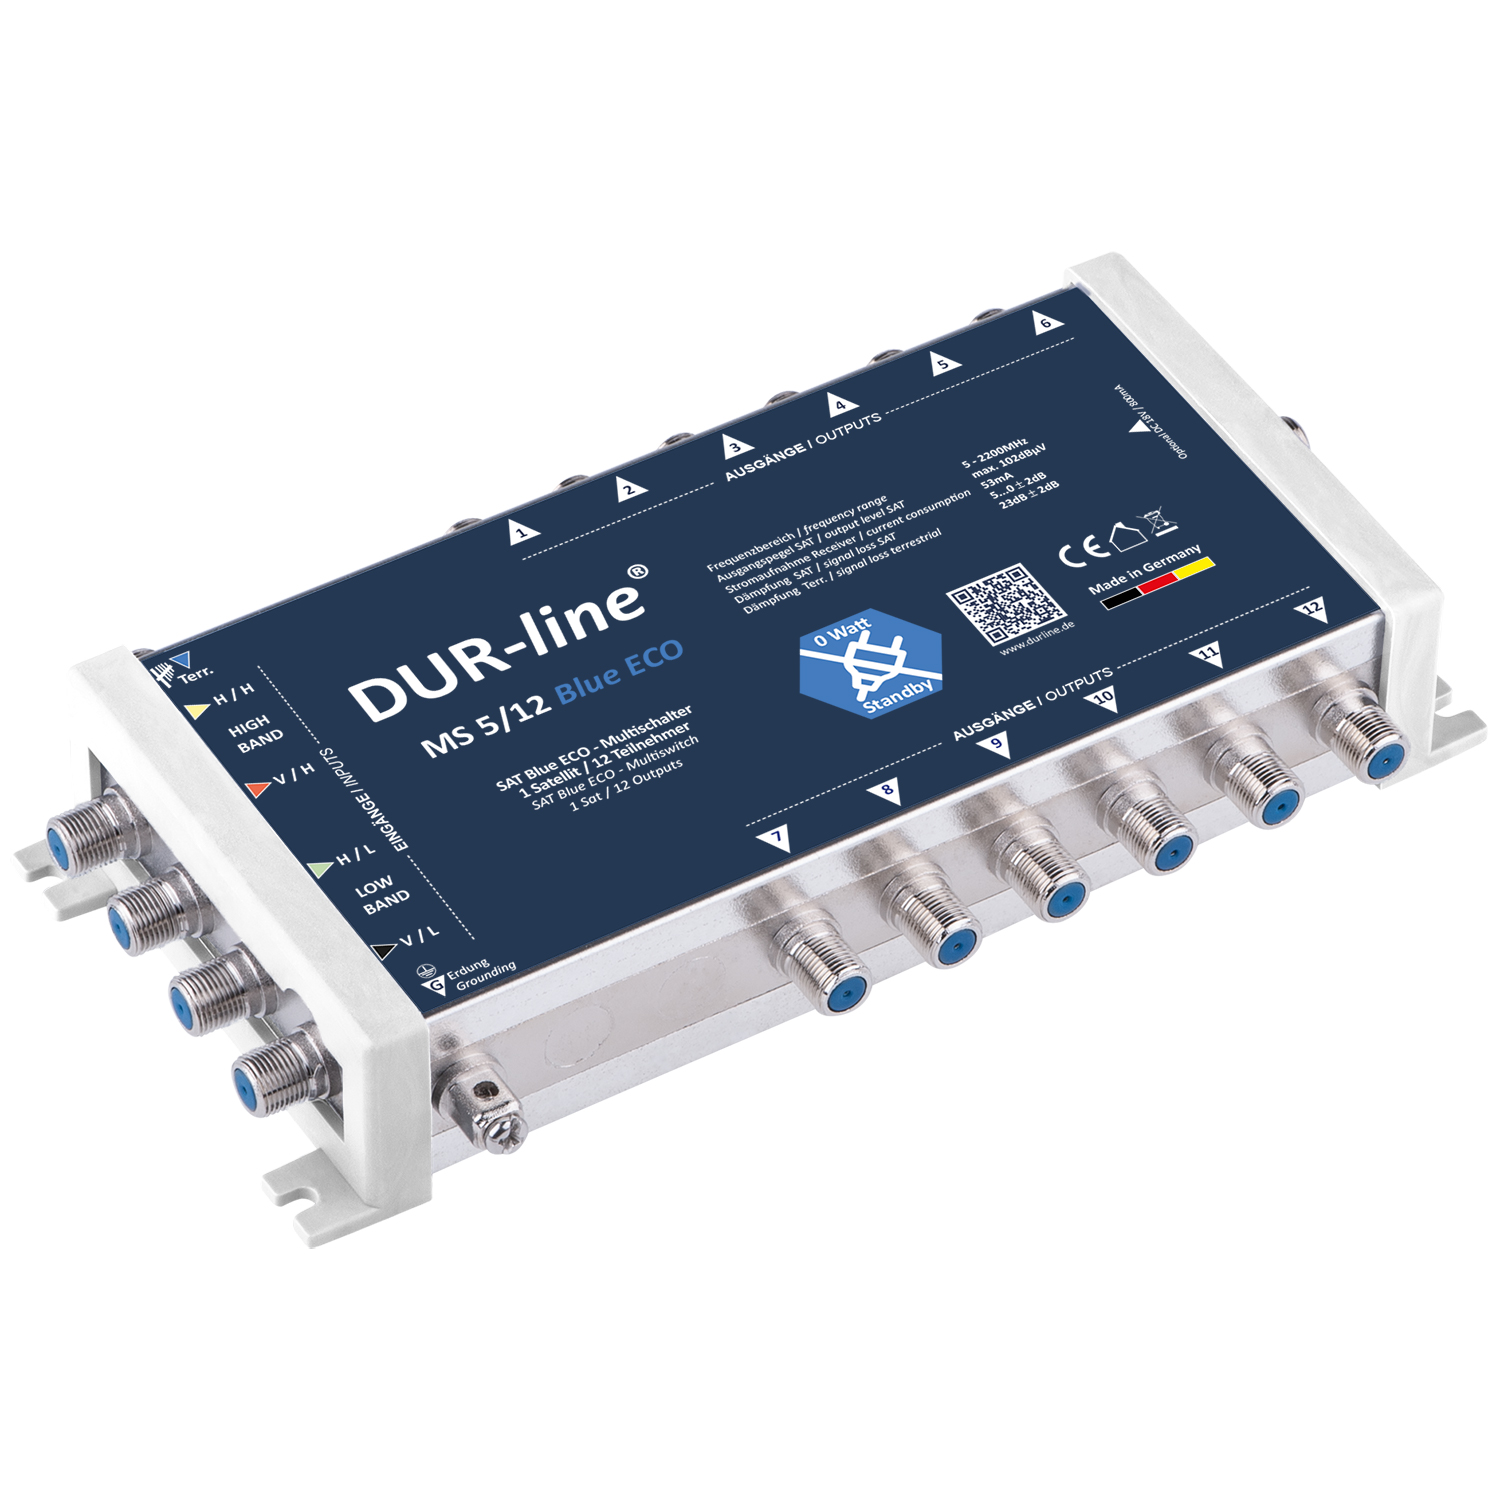 Multischalter 5/12 - DUR-line Blue eco Stromspar für 12 Teilnehmer kein Netzteil notwendig - 0 Watt Standby Multiswitch [Digital HDTV FullHD 4K UHD]